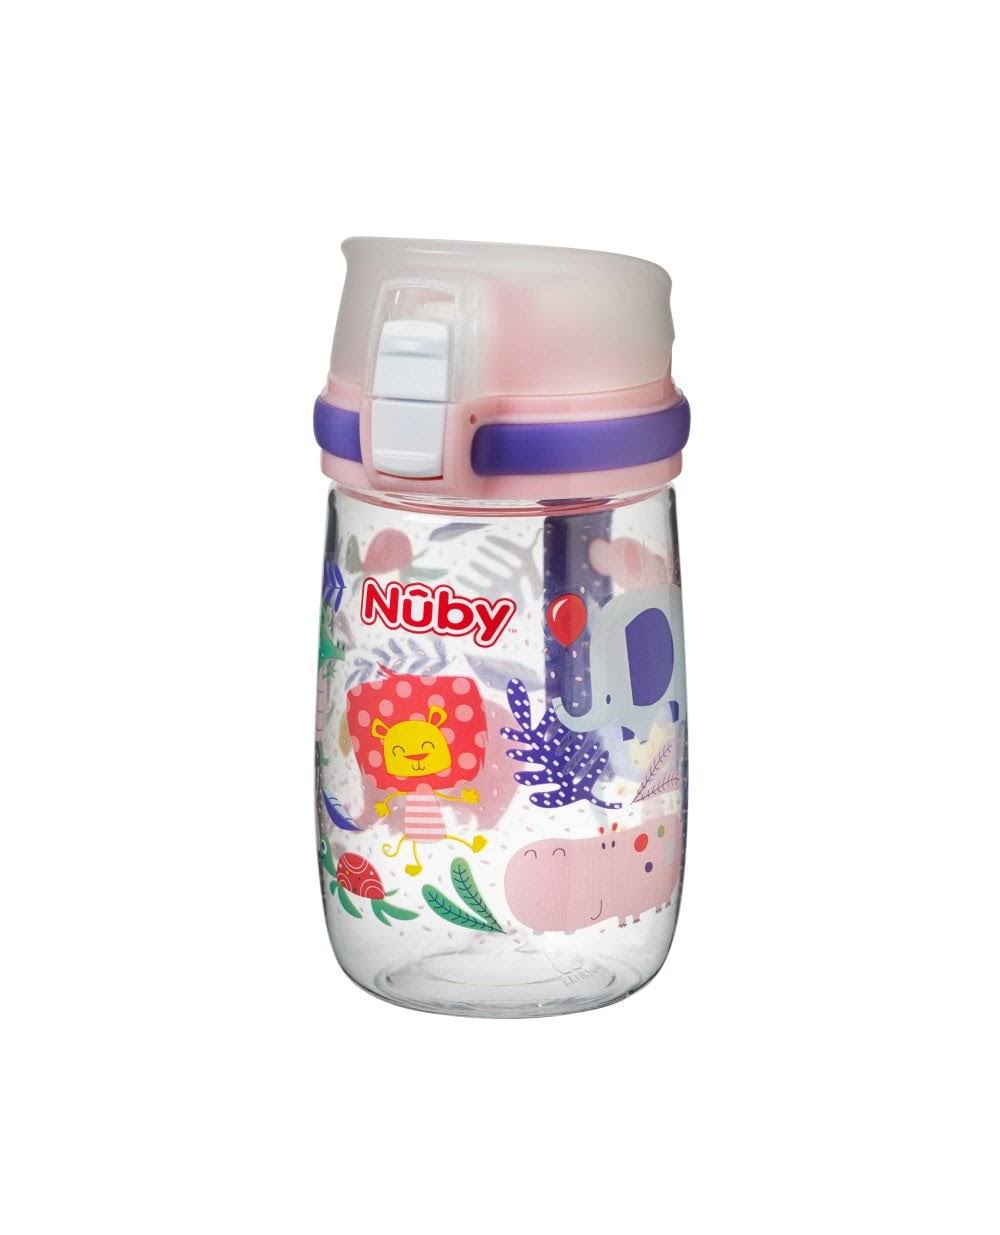 Nuby Mini Sports Bottle 18 Months +